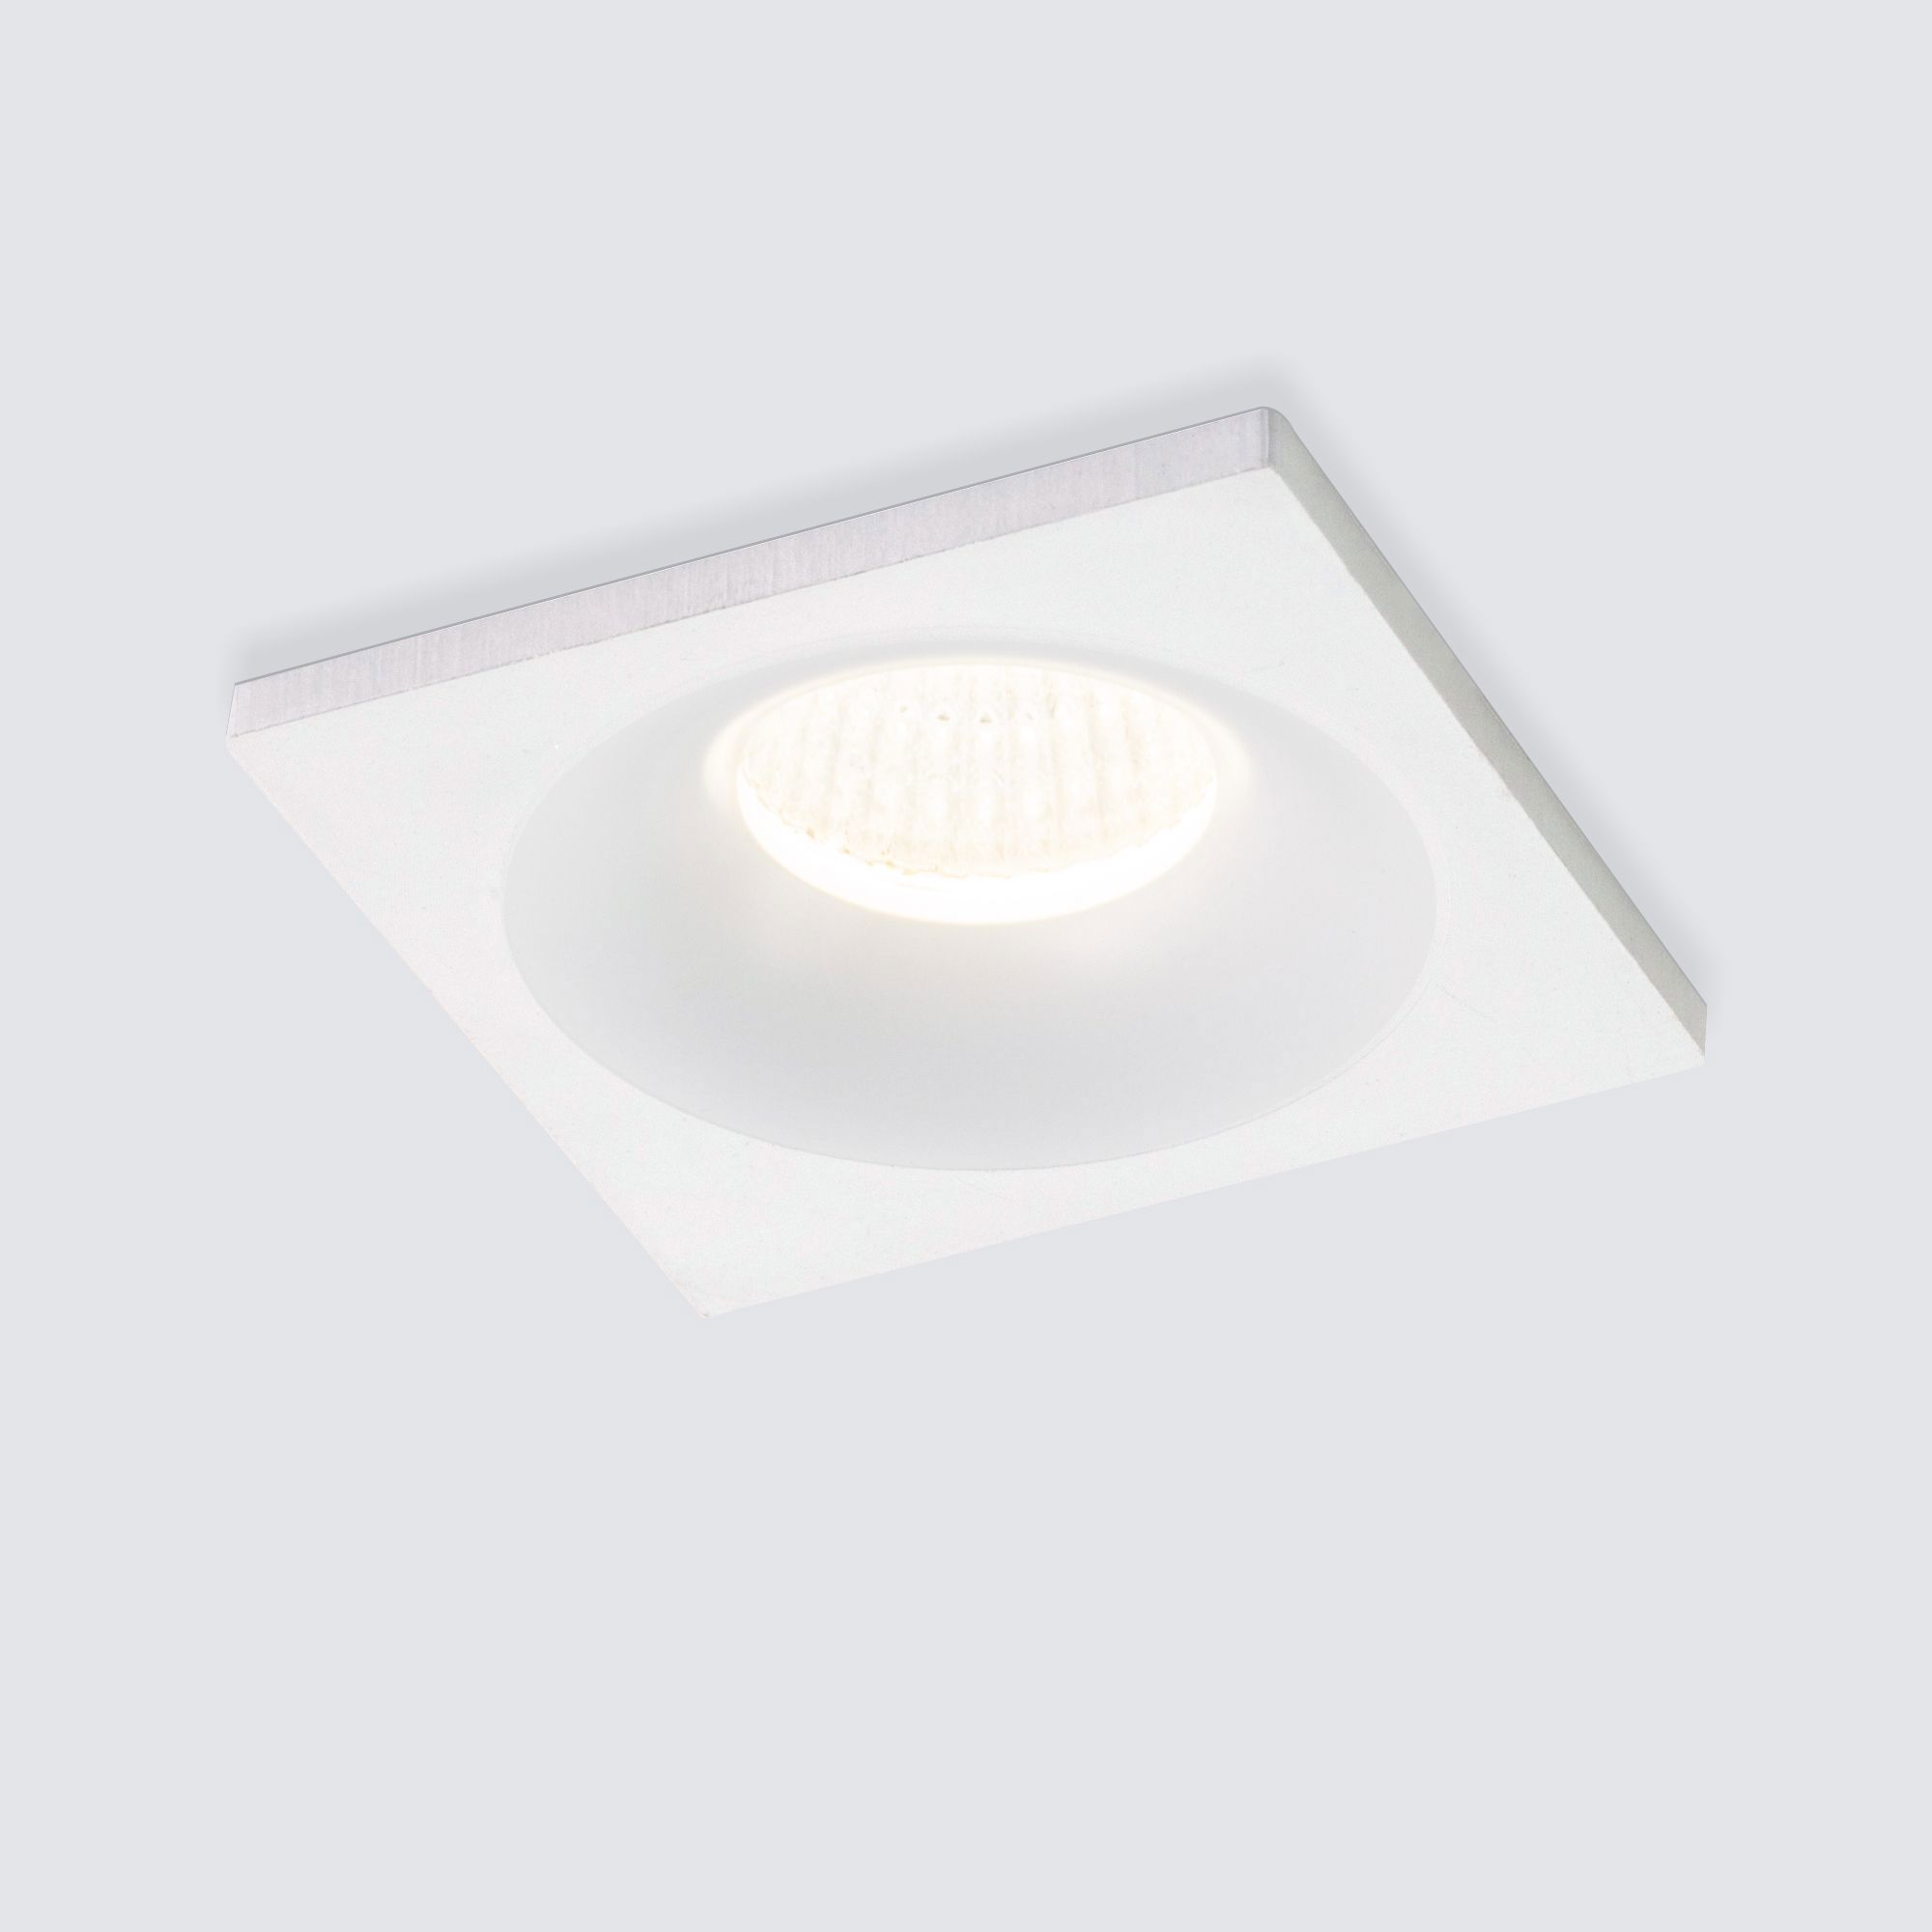 90286840 Светильник точечный светодиодный встраиваемый 15271/LED под отверстие 330 мм 1 м² нейтральный белый свет цвет белый STLM-0169570 ELEKTROSTANDARD